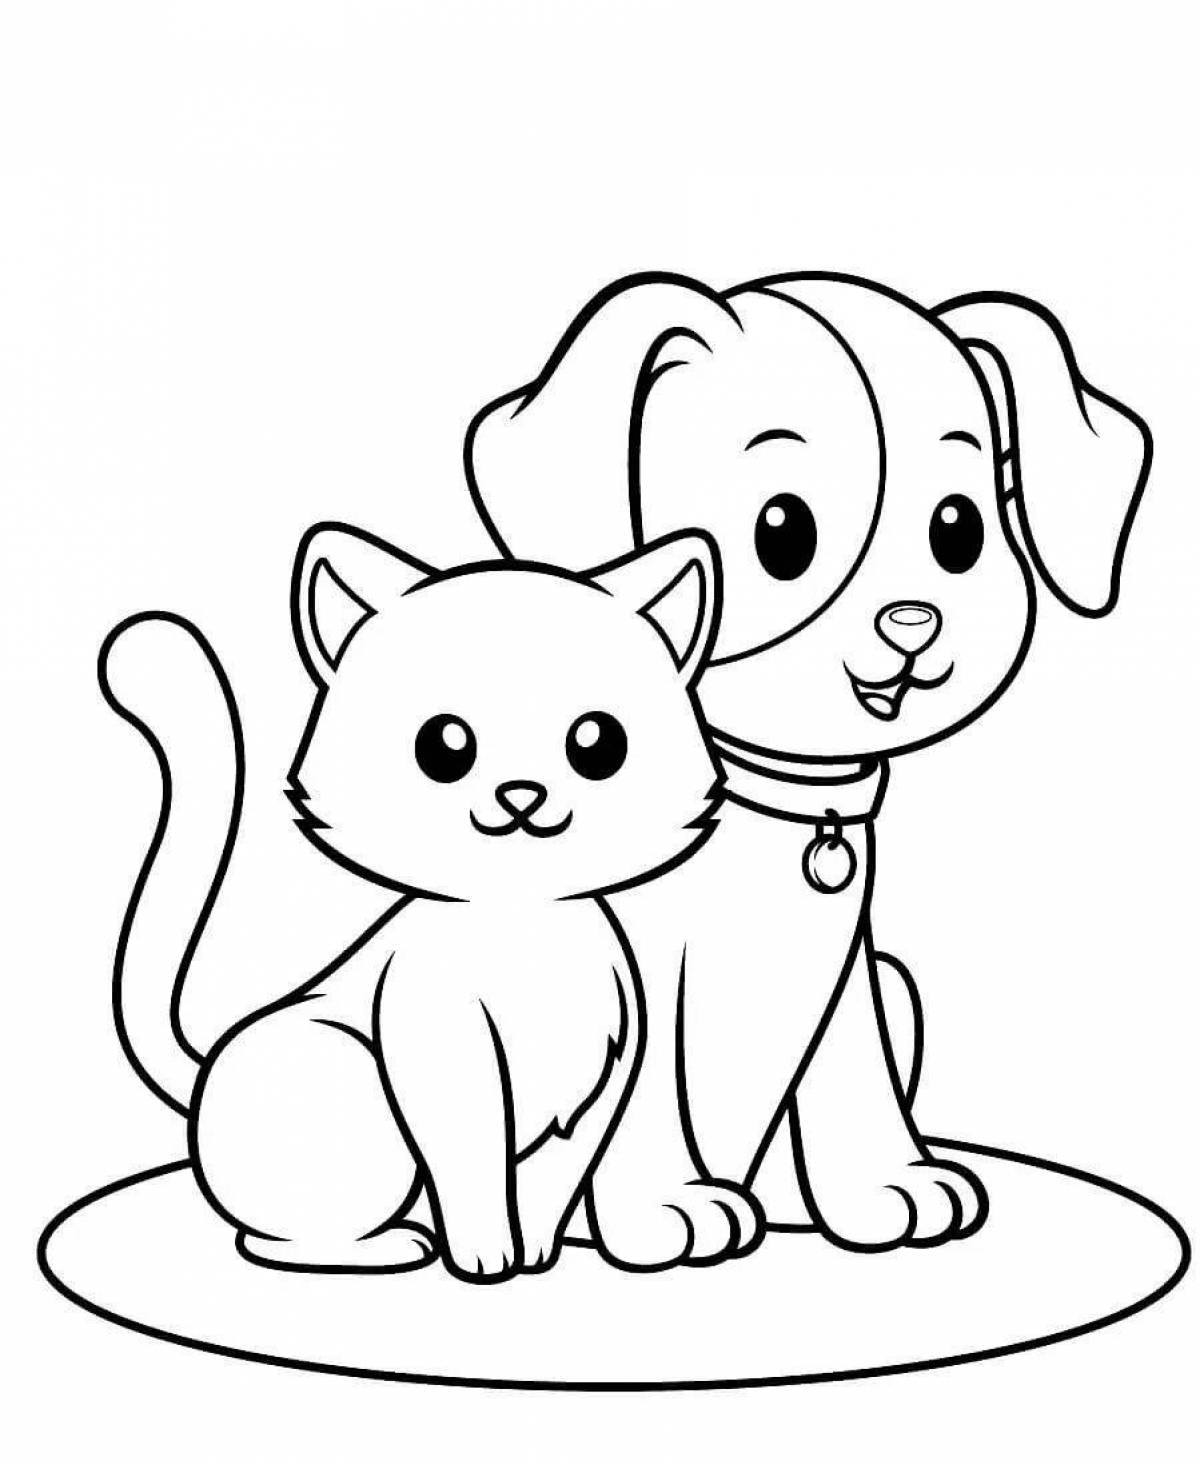 Раскраска Собака и кошка